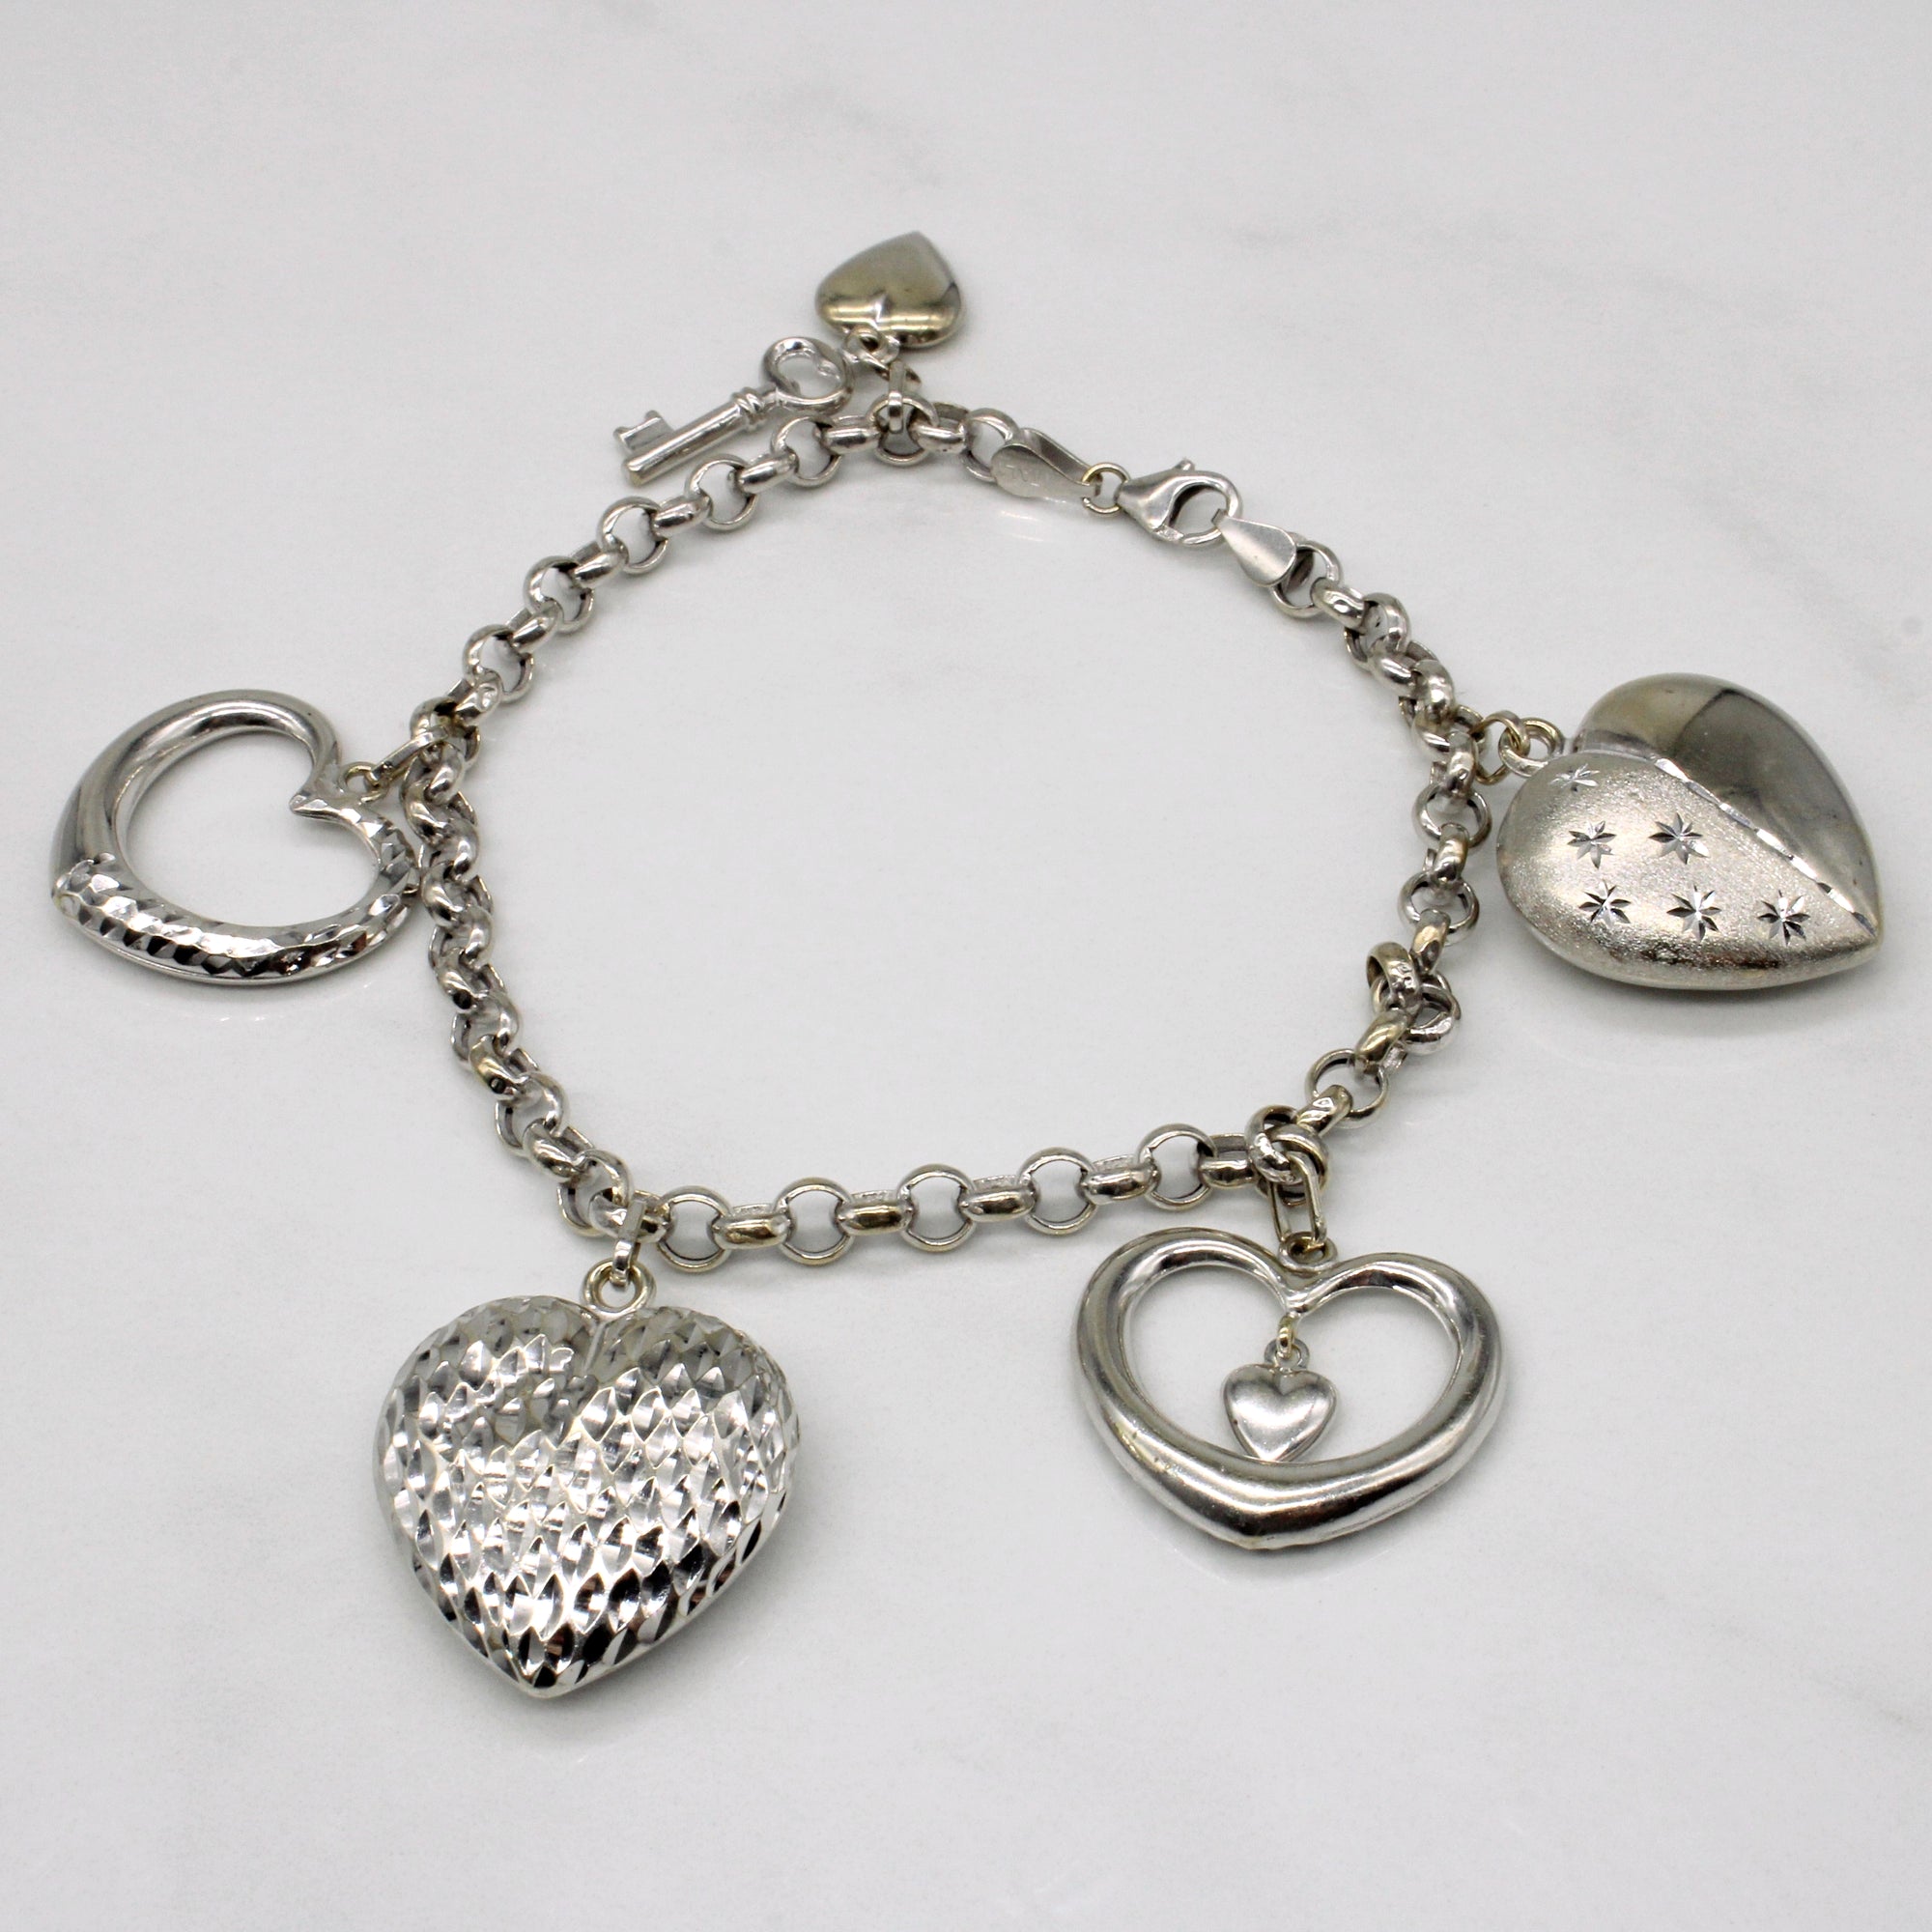 14K White Gold Heart Charm Bracelet | One Size | Bracelets Charm Bracelets